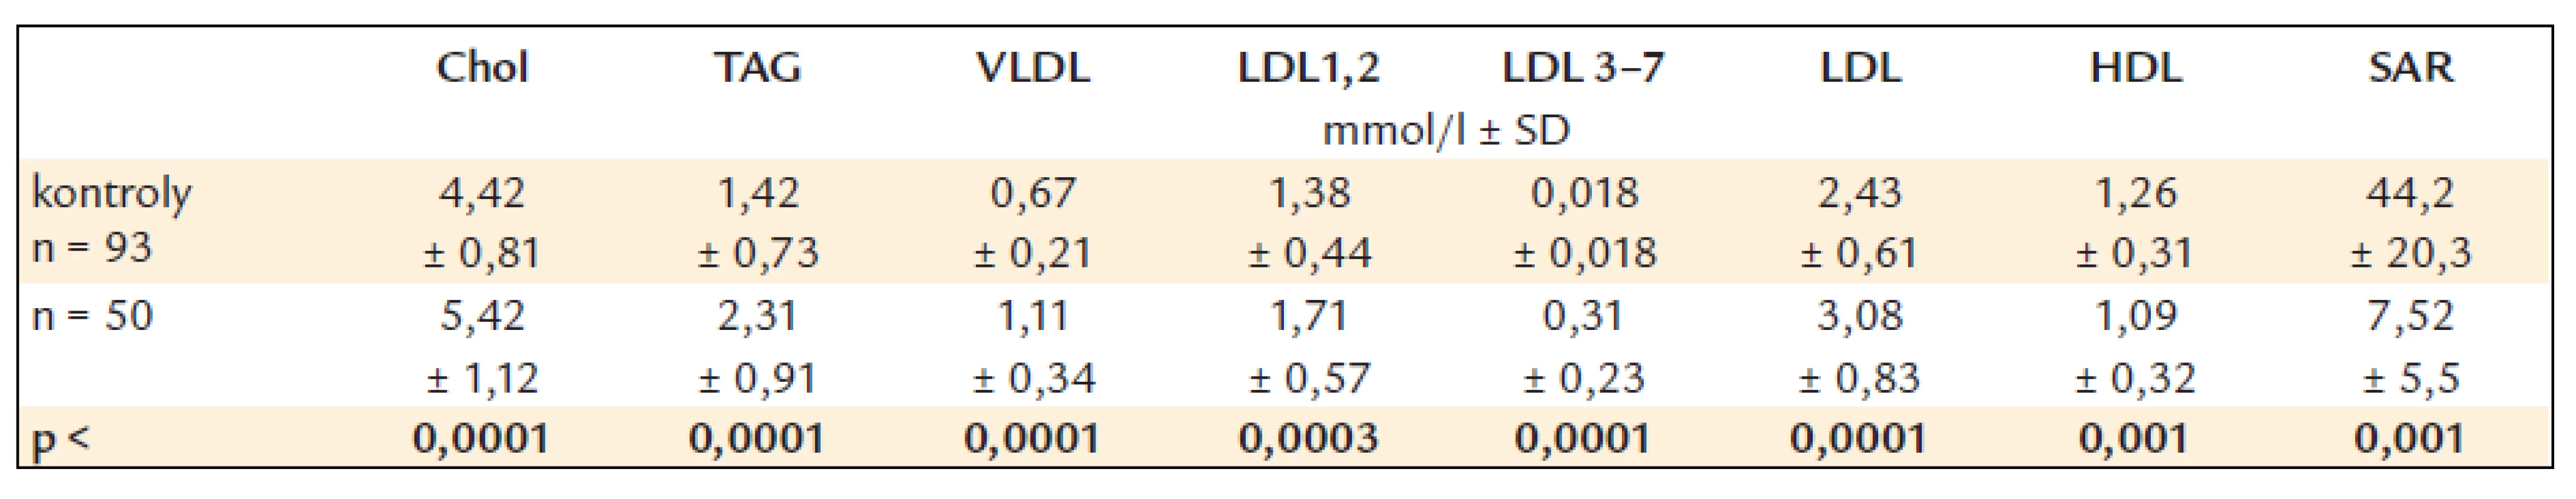 Koncentrácie plazmatických lipidov, lipoproteinov a skóre aterogénneho rizika.